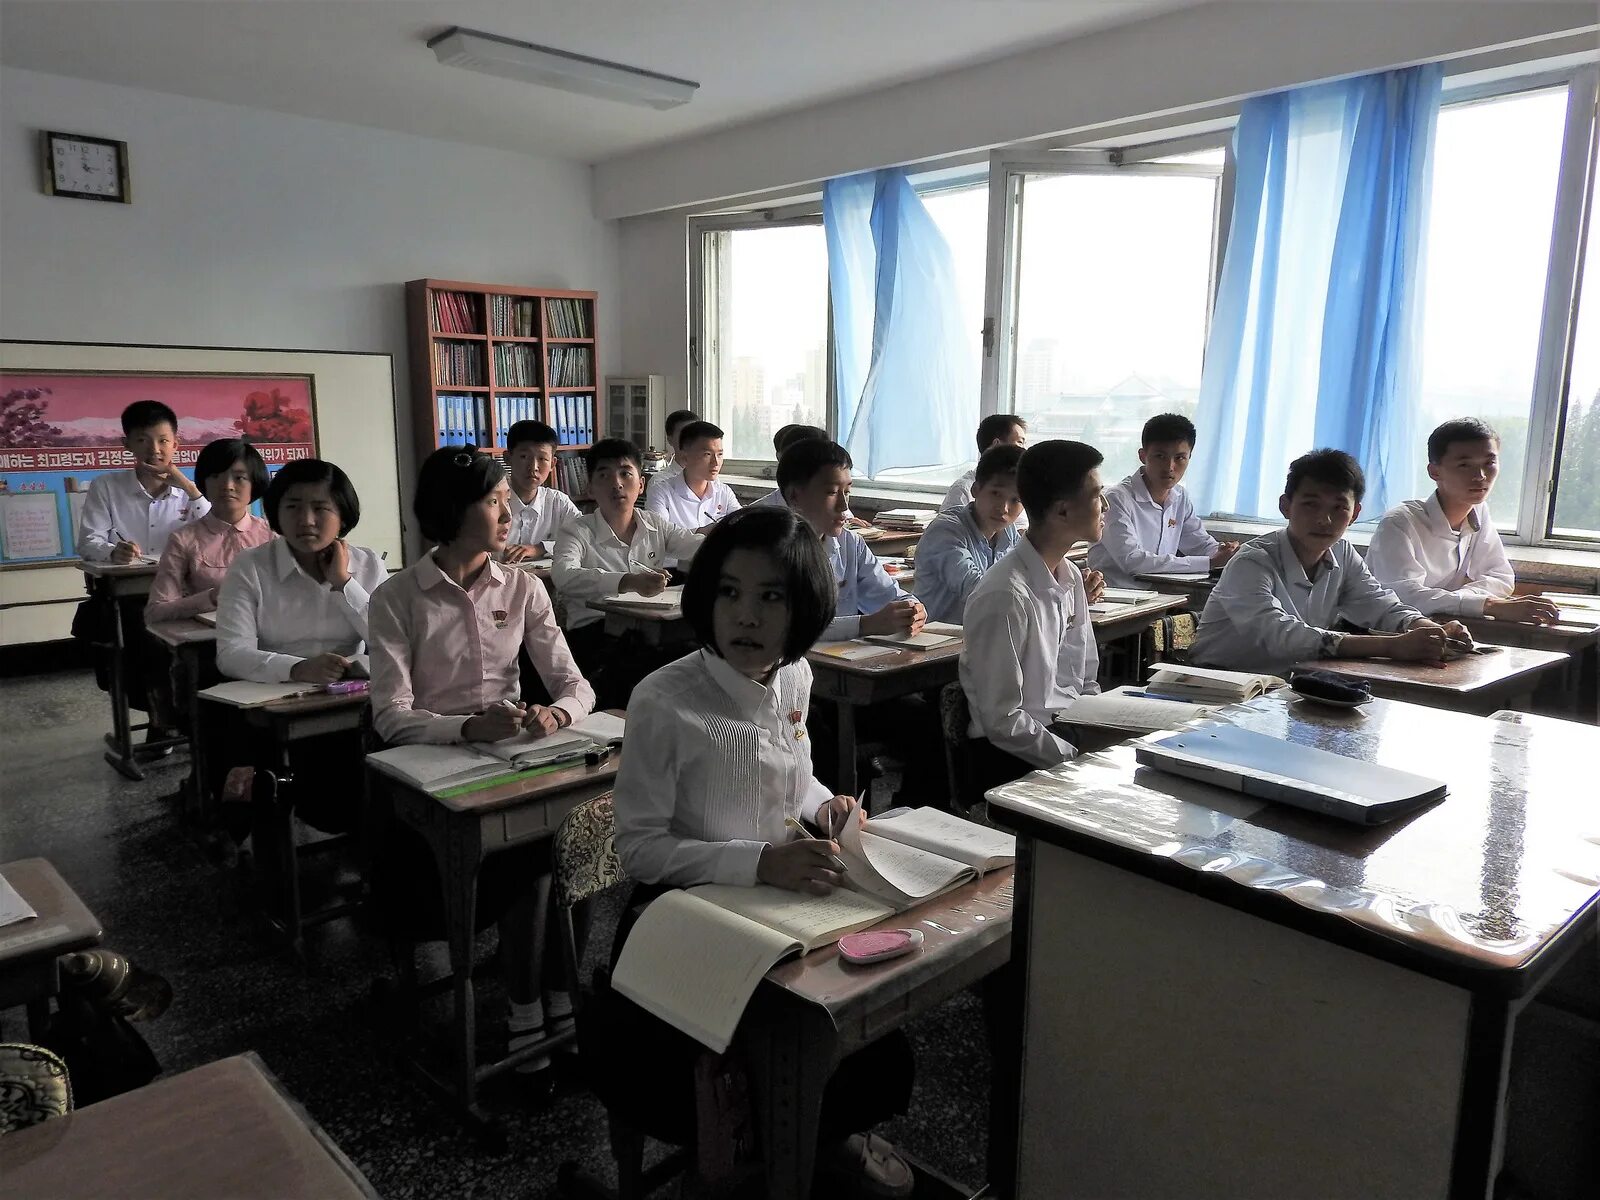 Старшая школа в Северной Корее. Средняя школа Северной Кореи. Средняя школа в Южной Корее. Образование в Северной Корее средняя школа. Корейская старшая школа